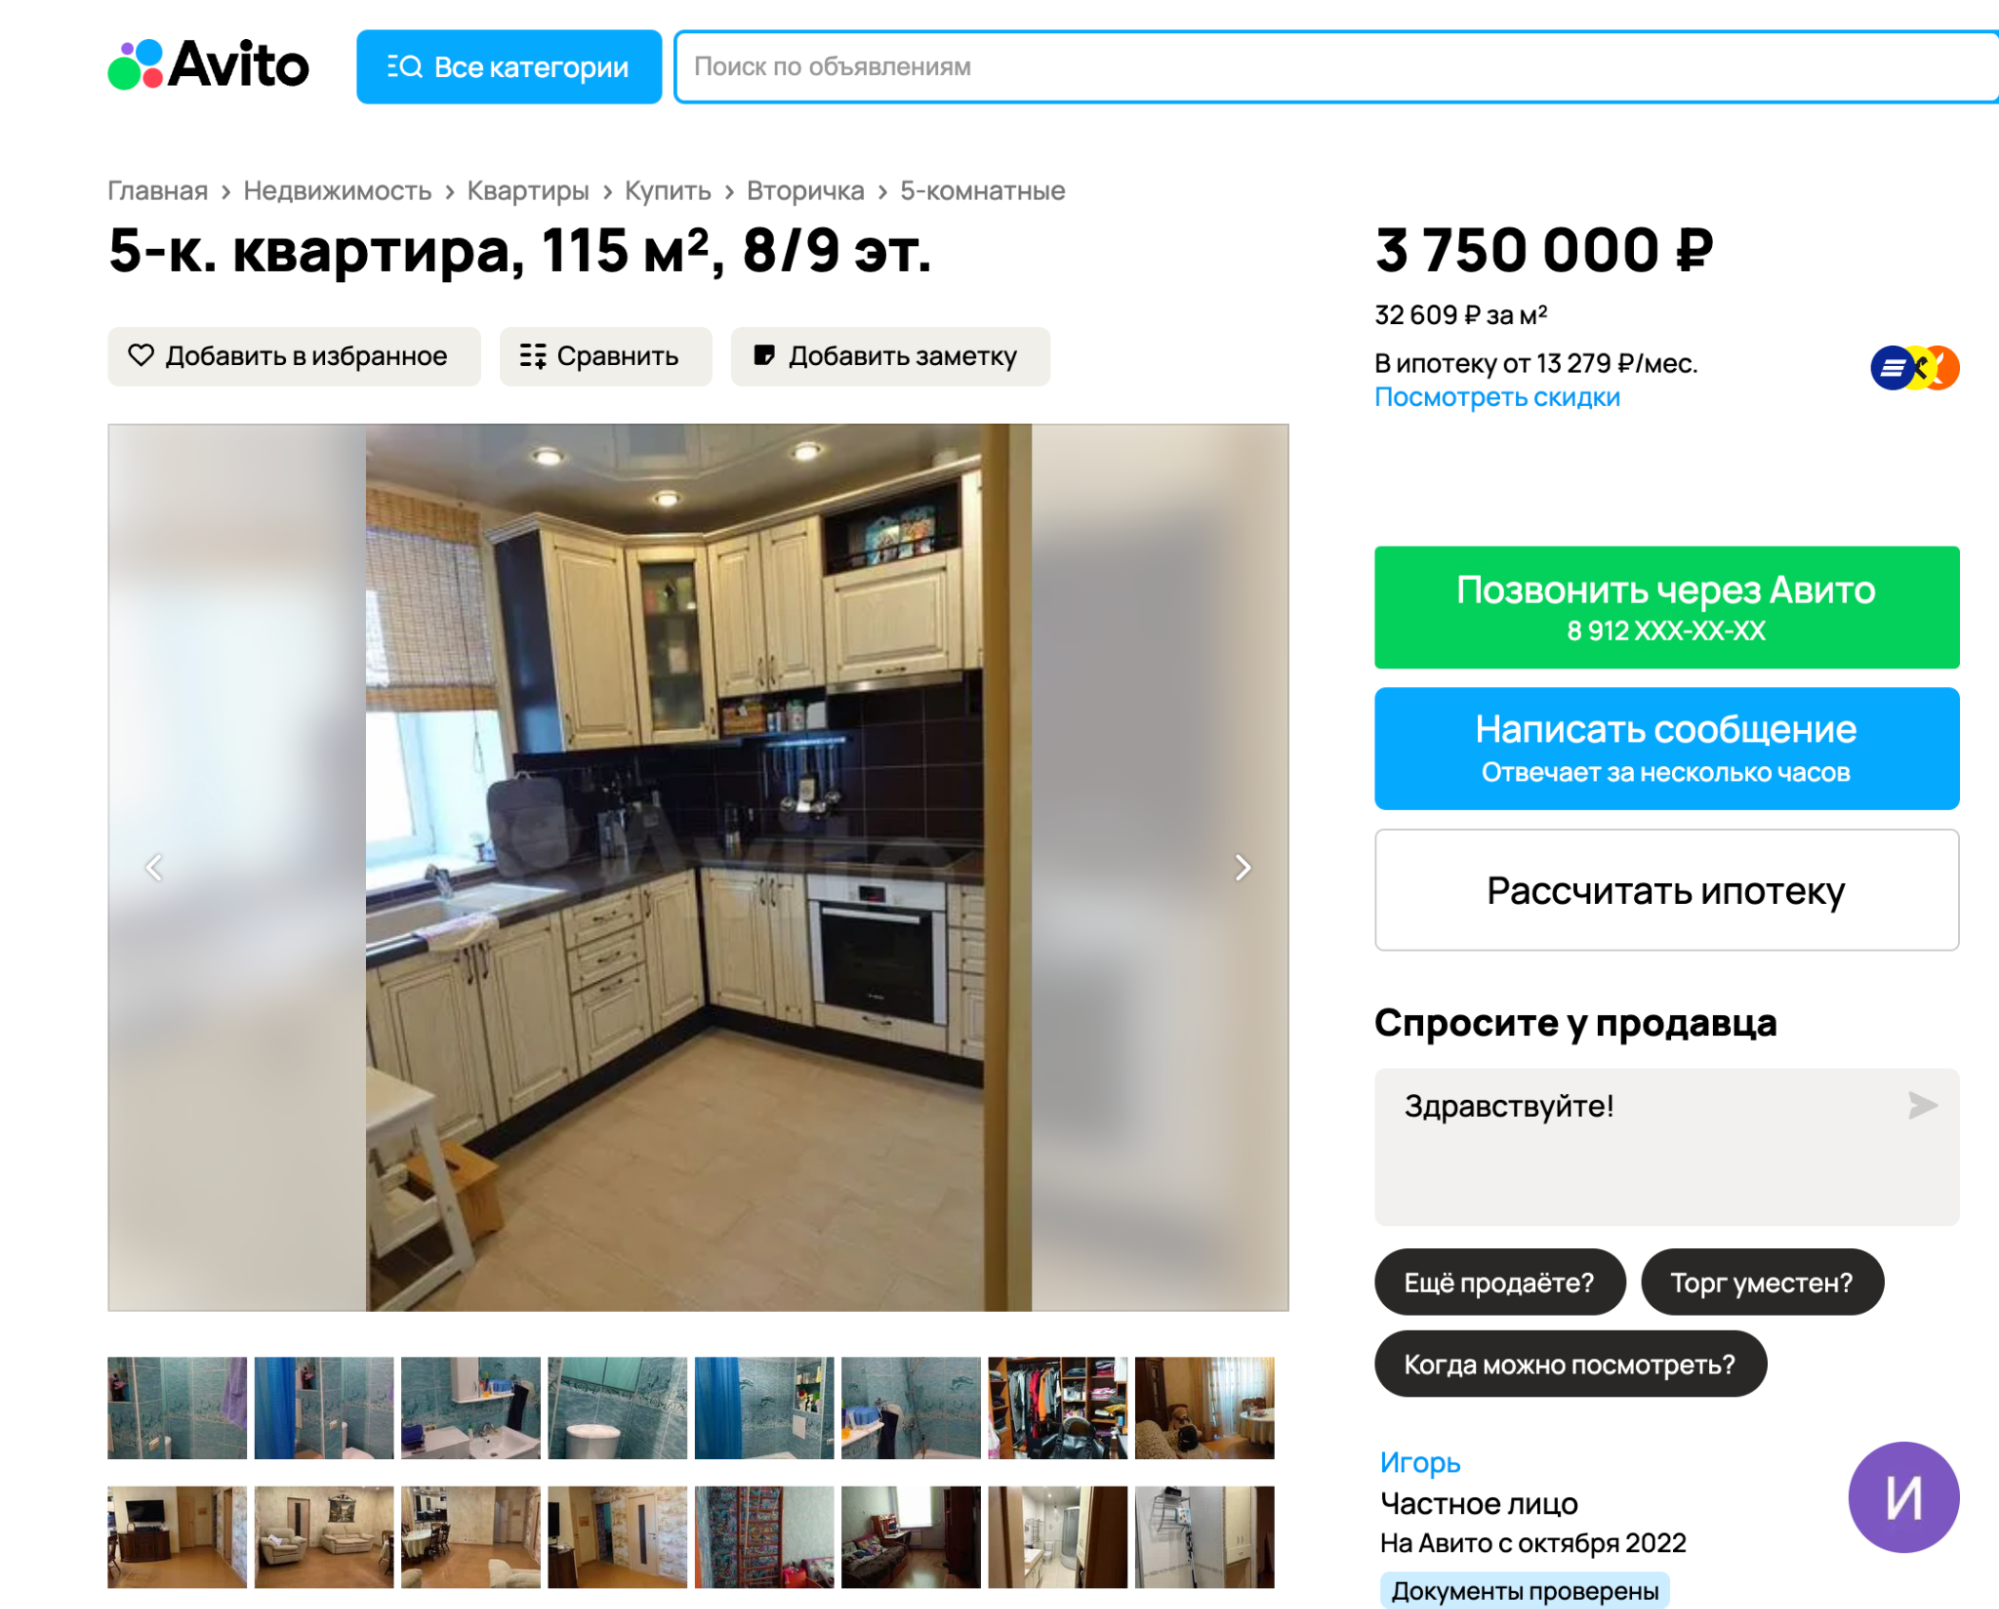 Пятикомнатная квартира в центре Воркуты обойдется в 3,7 млн. В придачу оставят мебель и бытовую технику. Источник: avito.ru